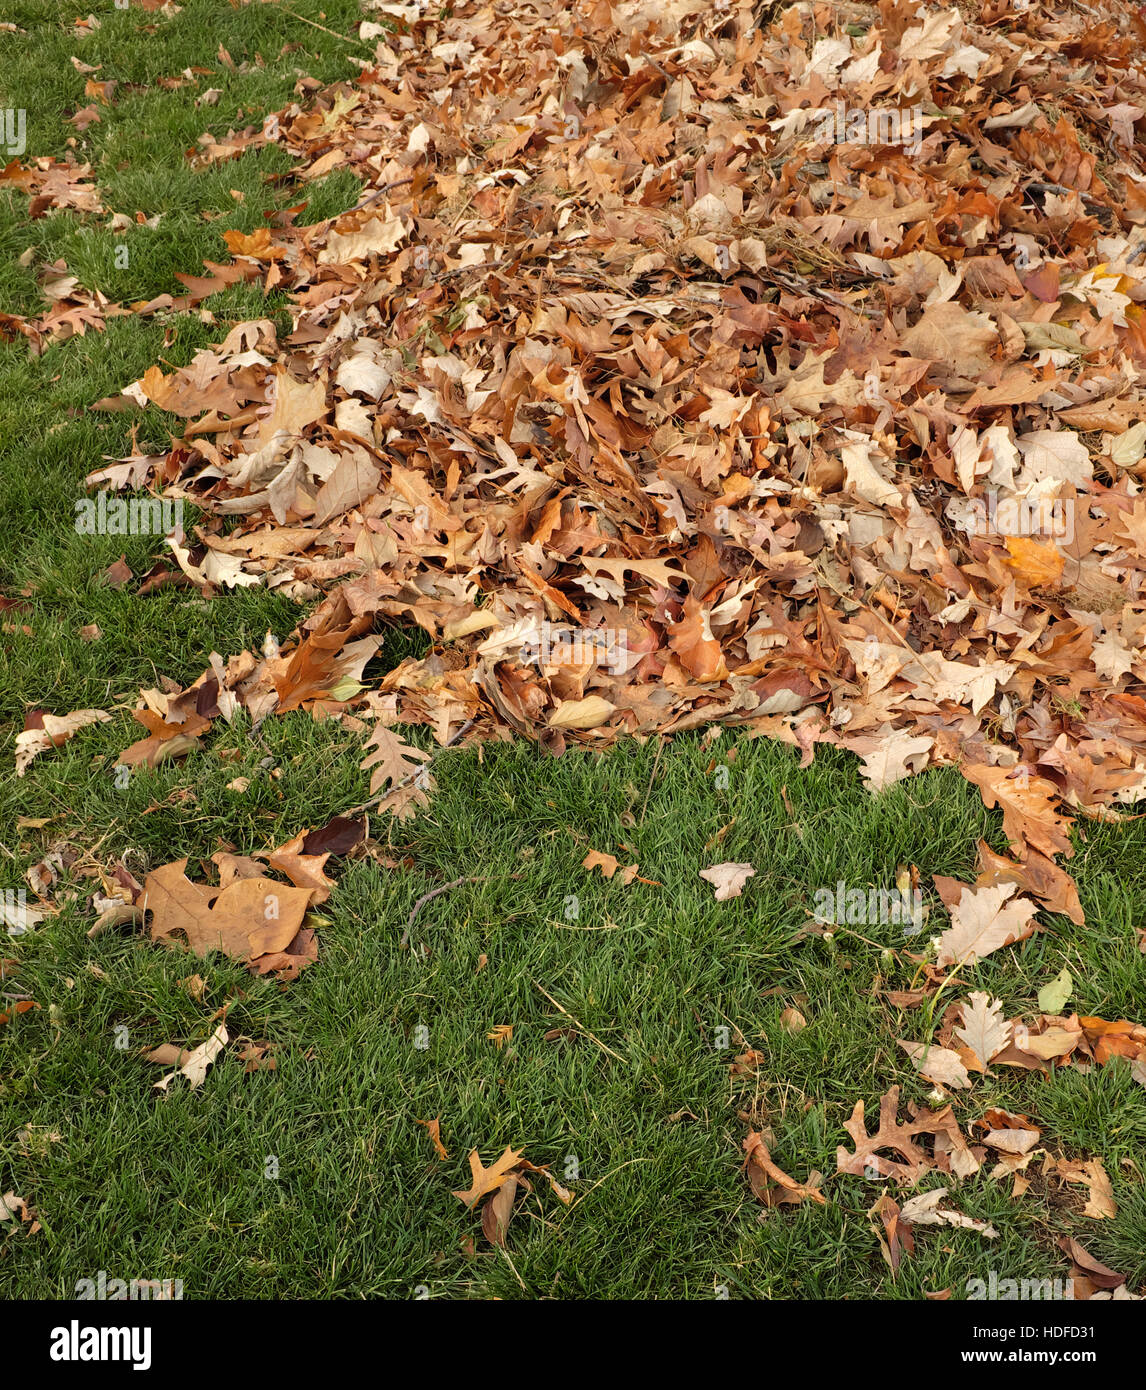 Haufen von Rake Blätter auf dem grünen Rasen. Stockfoto